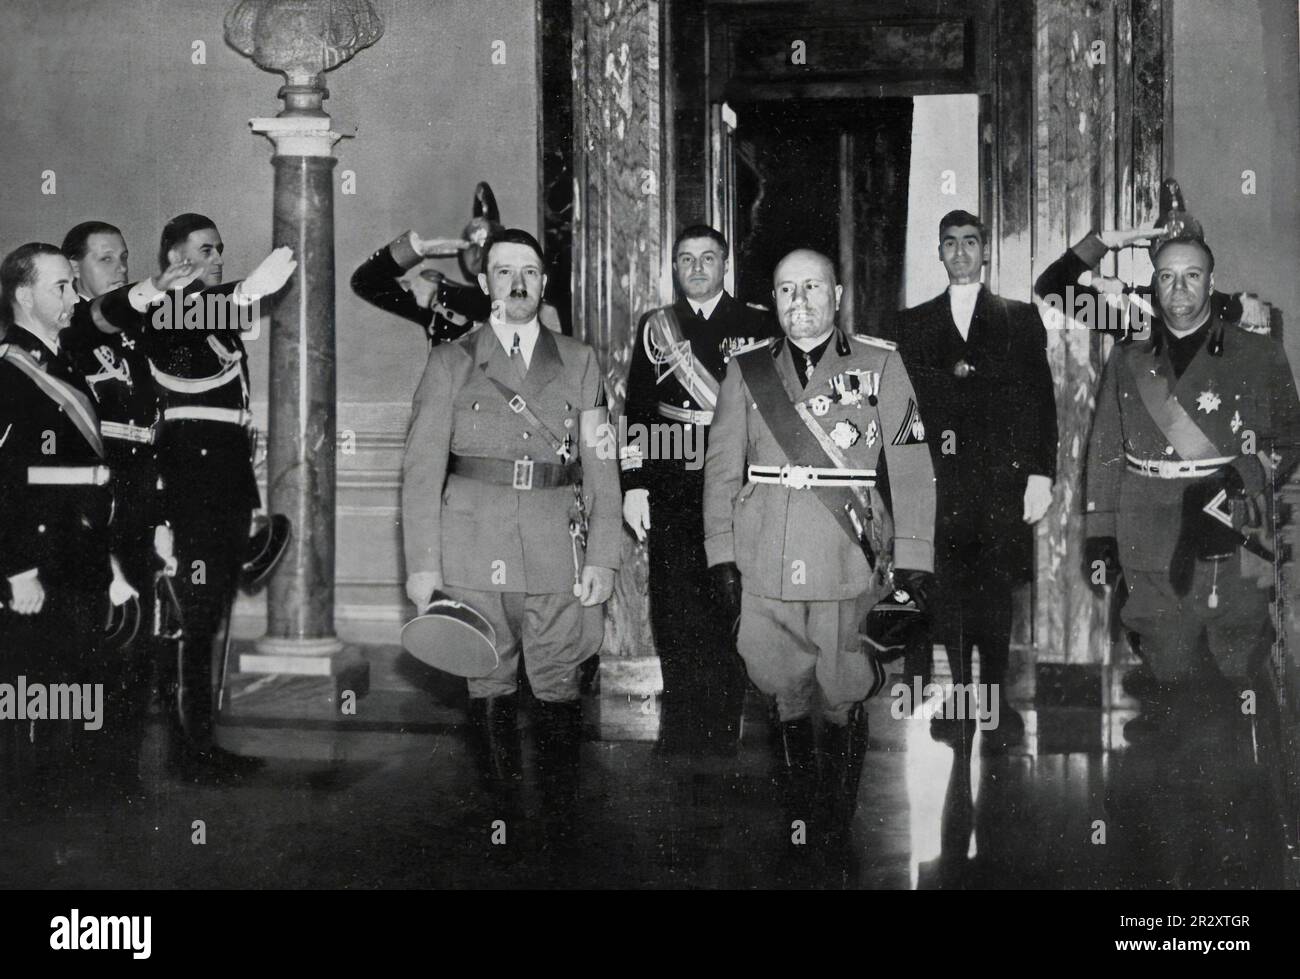 Incontro del dittatore italiano Benito Mussolini con il dittatore nazista Hitler in Italia nel 1938 Foto Stock